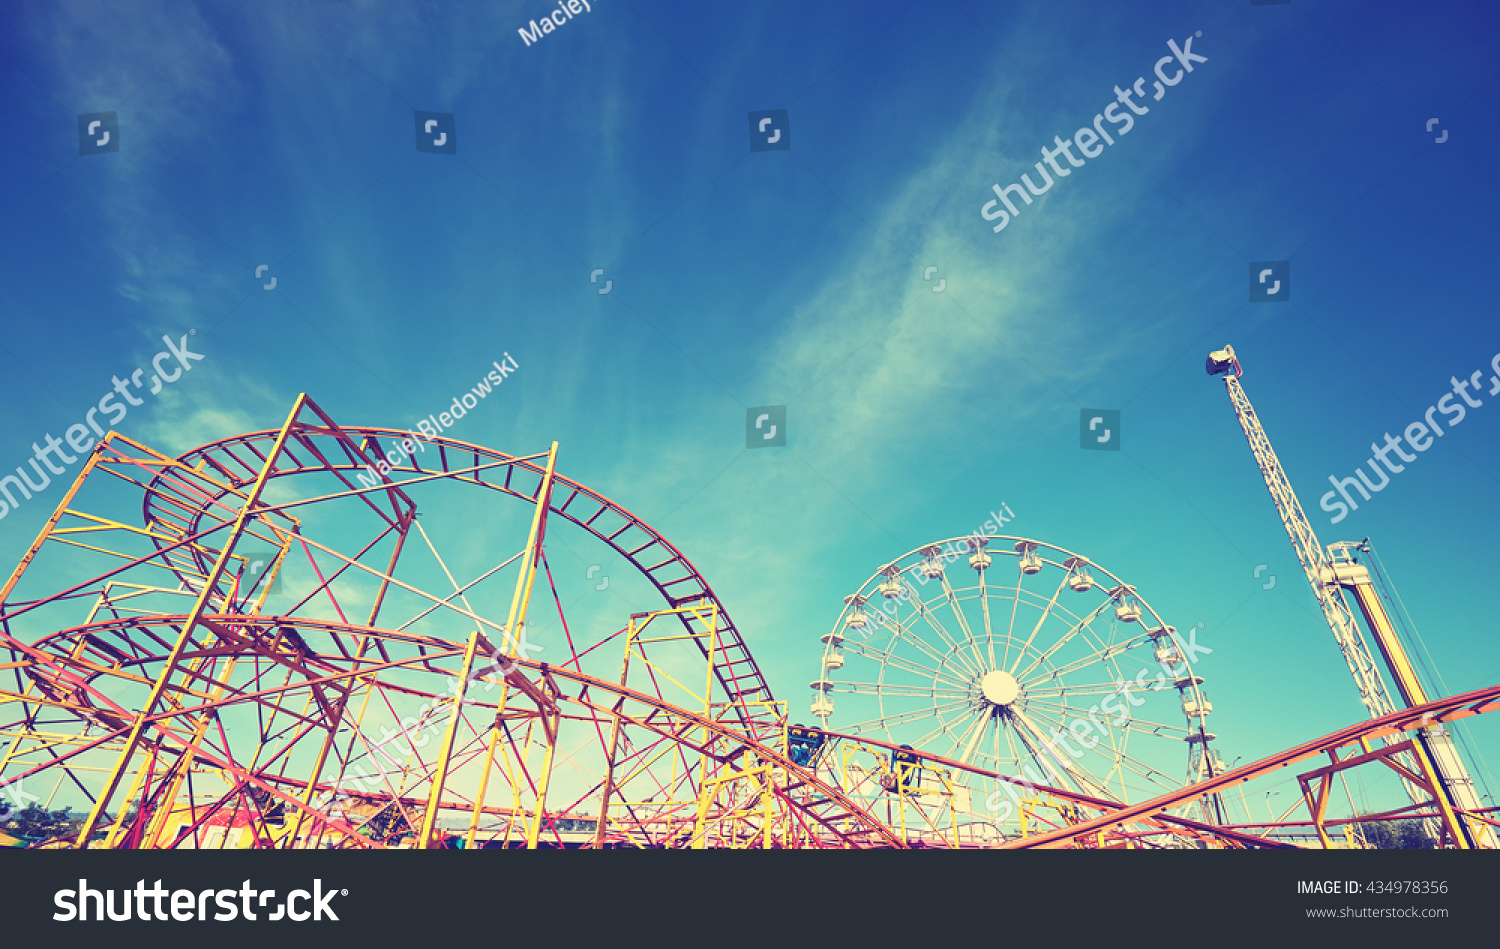 Vintage toned picture of an amusement park. #434978356